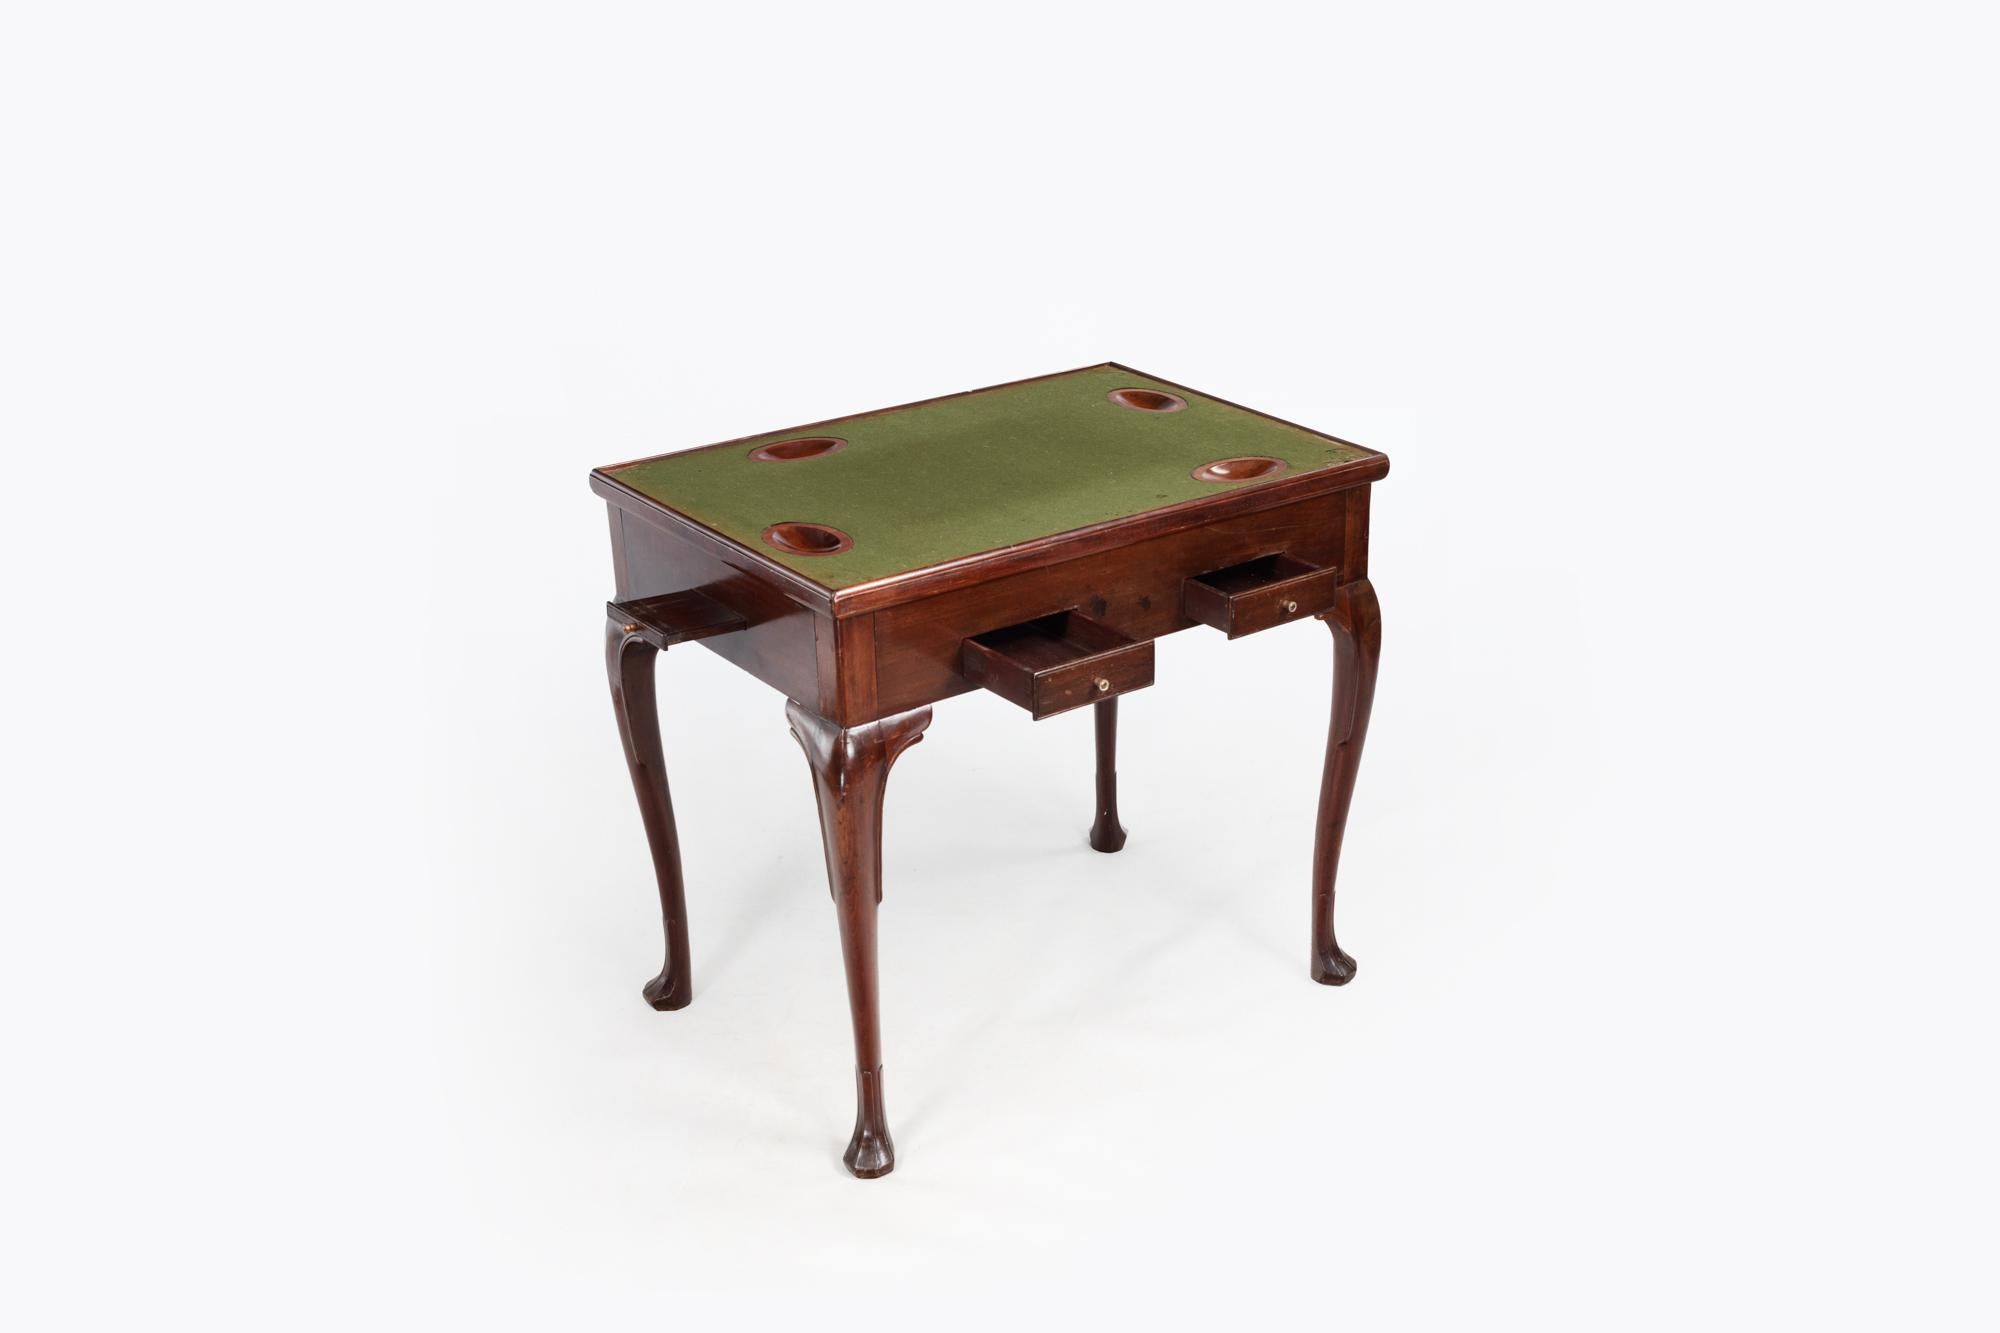 Table à jeux irlandaise du XVIIIe siècle en acajou géorgien avec plateau rectangulaire amovible. Le plateau rectangulaire réversible à surface de jeu en baise et contre-puits encastrés se trouve au-dessus de la frise contenant des glissières de